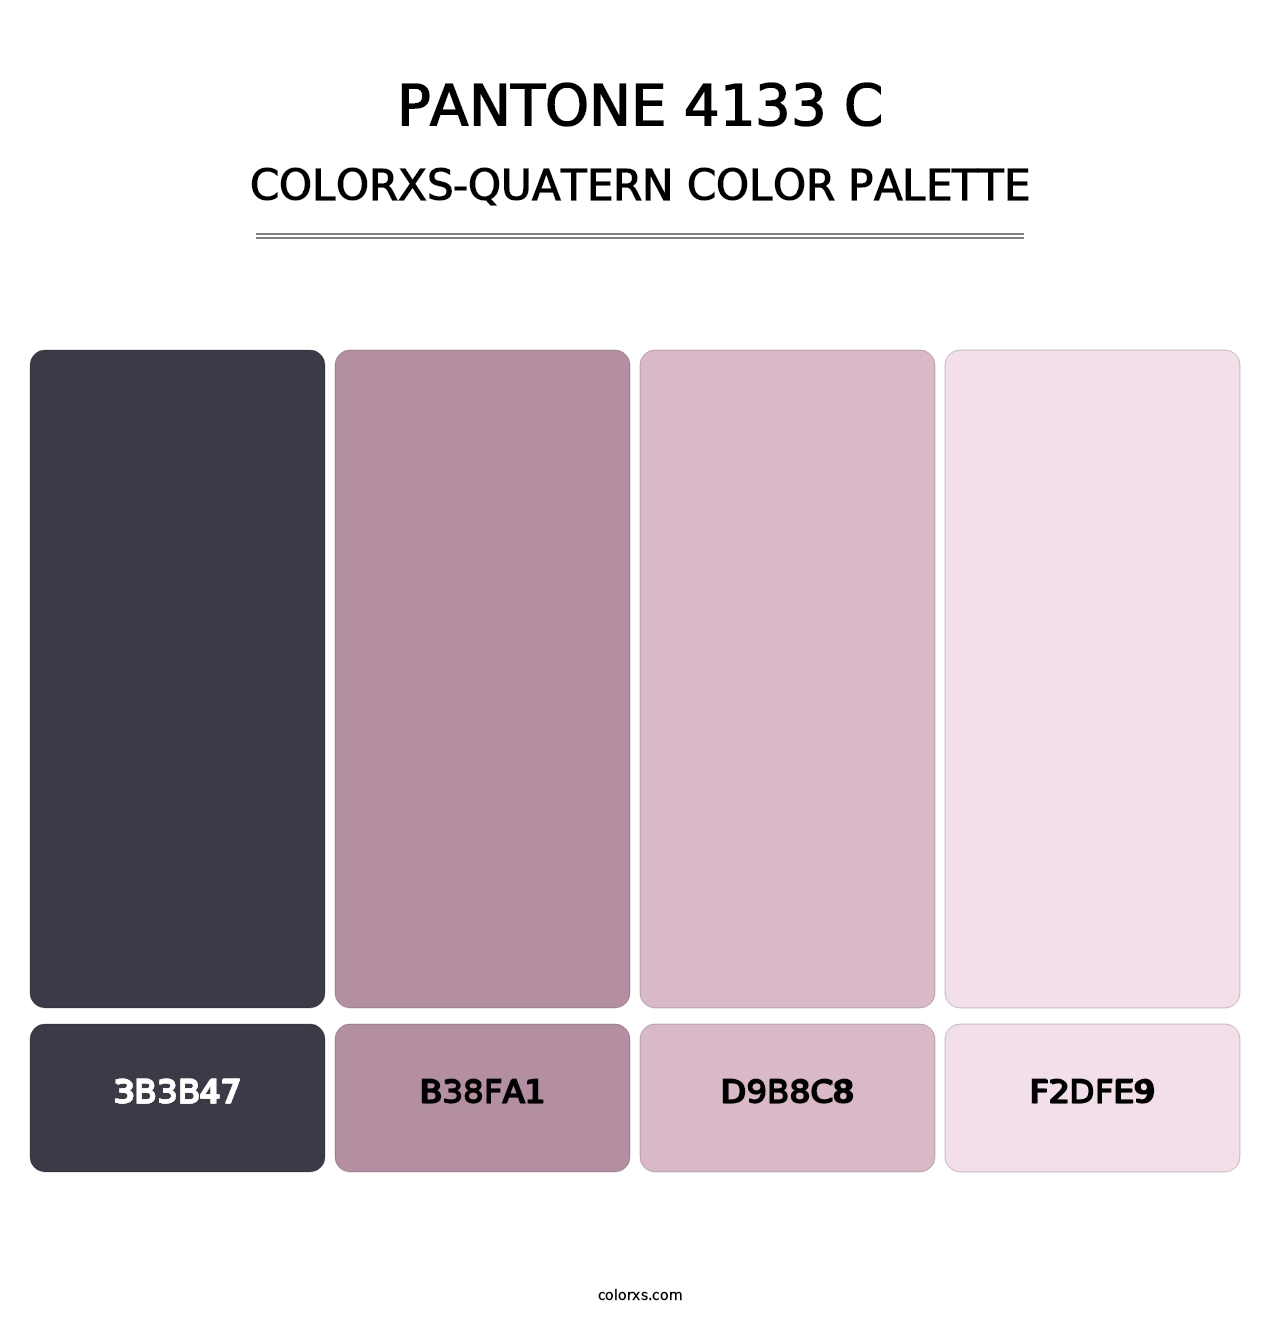 PANTONE 4133 C - Colorxs Quatern Palette